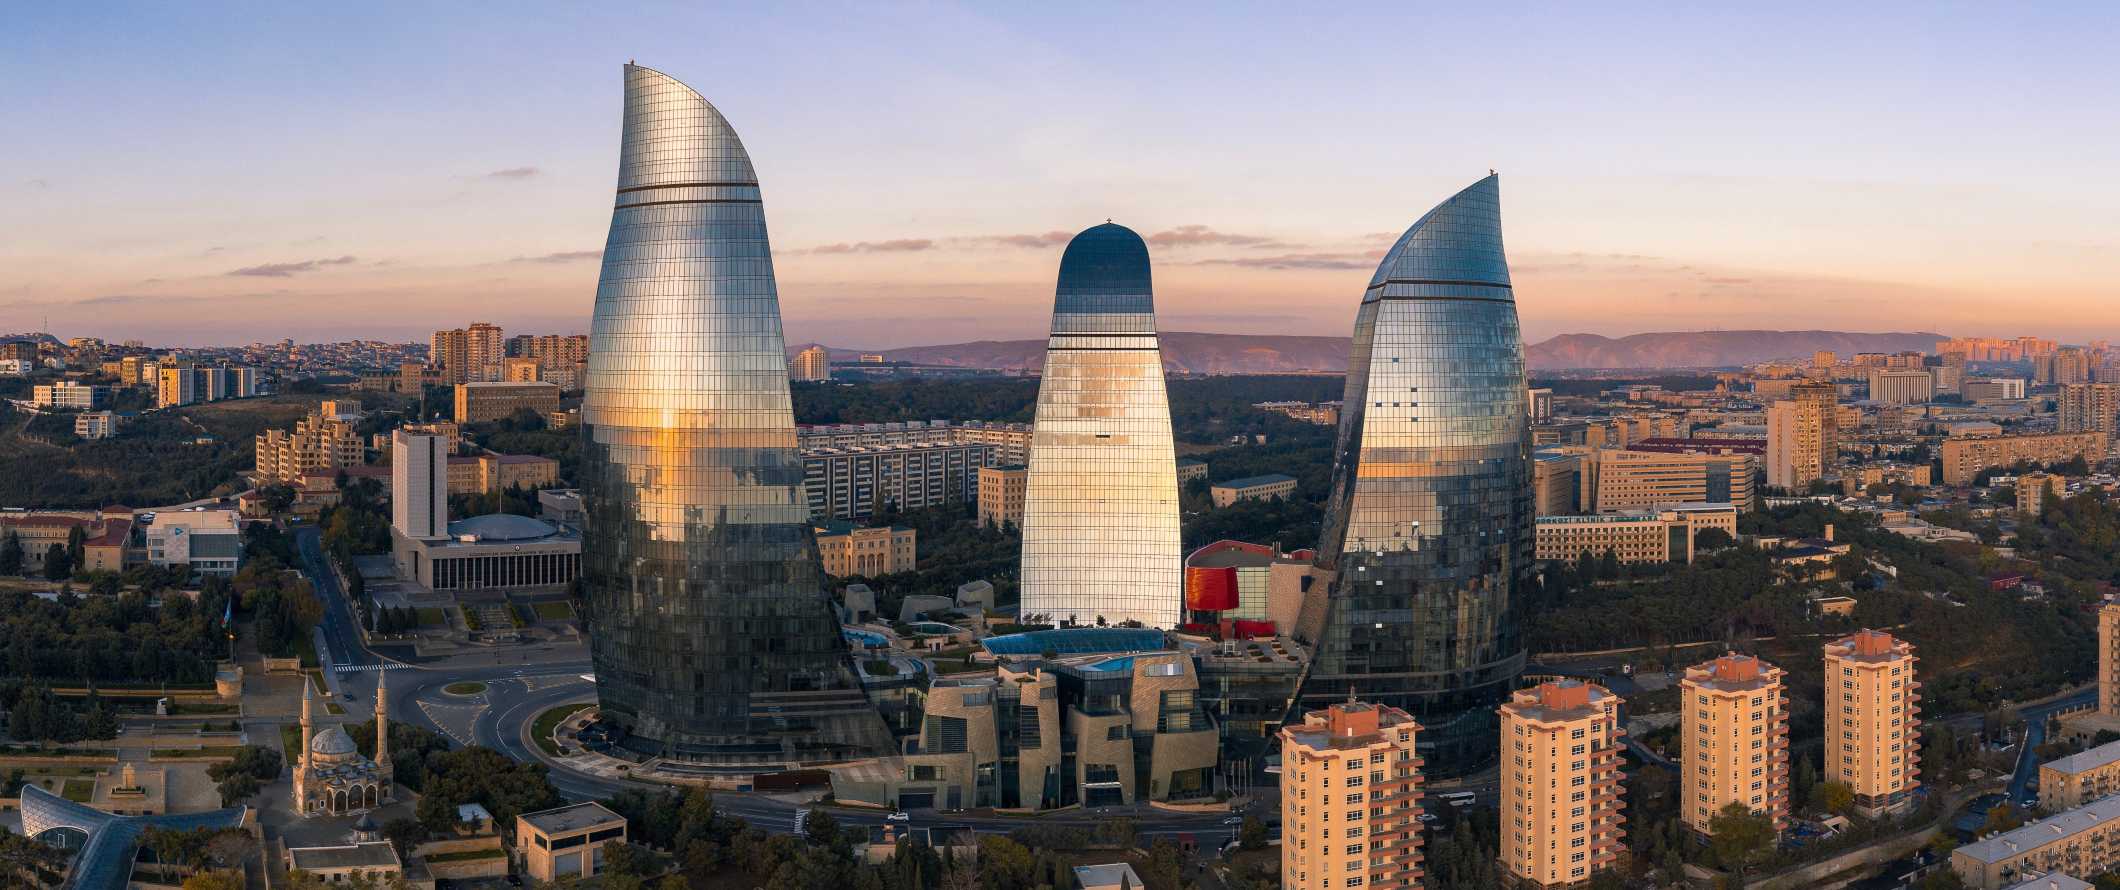 Torres de chamas em Baku, Azerbaijão, com vista para a cidade ao pôr do sol.